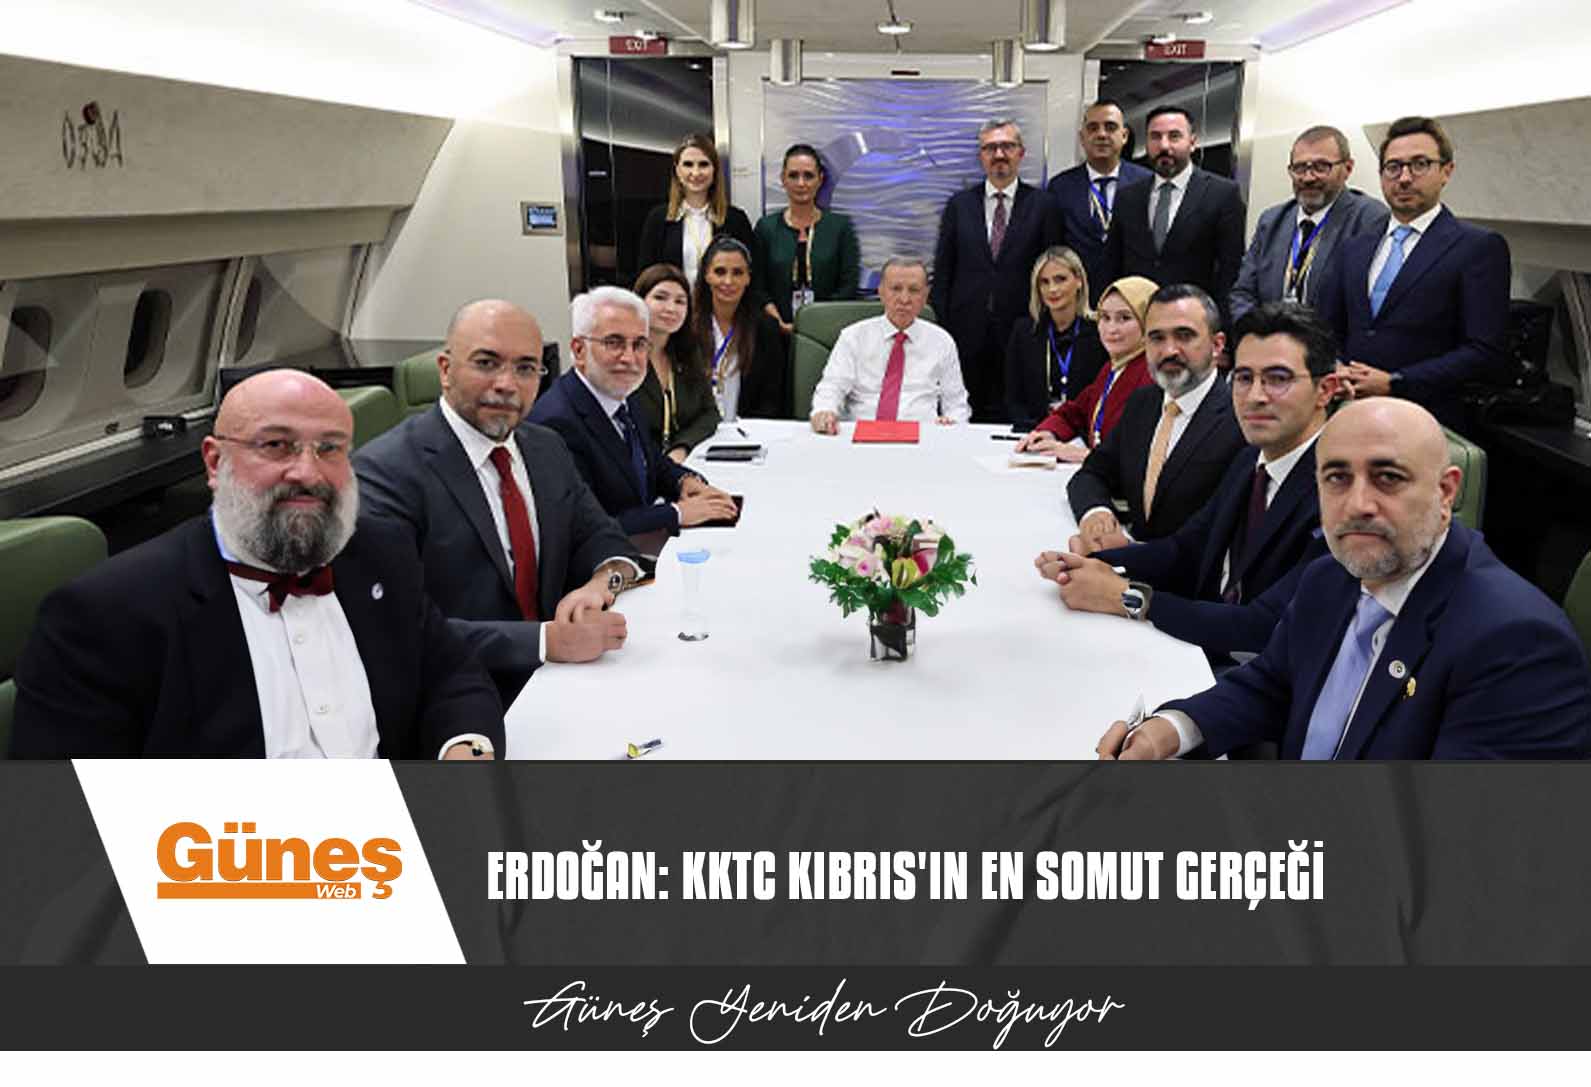 Erdoğan: KKTC Kıbrıs’ın En Somut Gerçeği